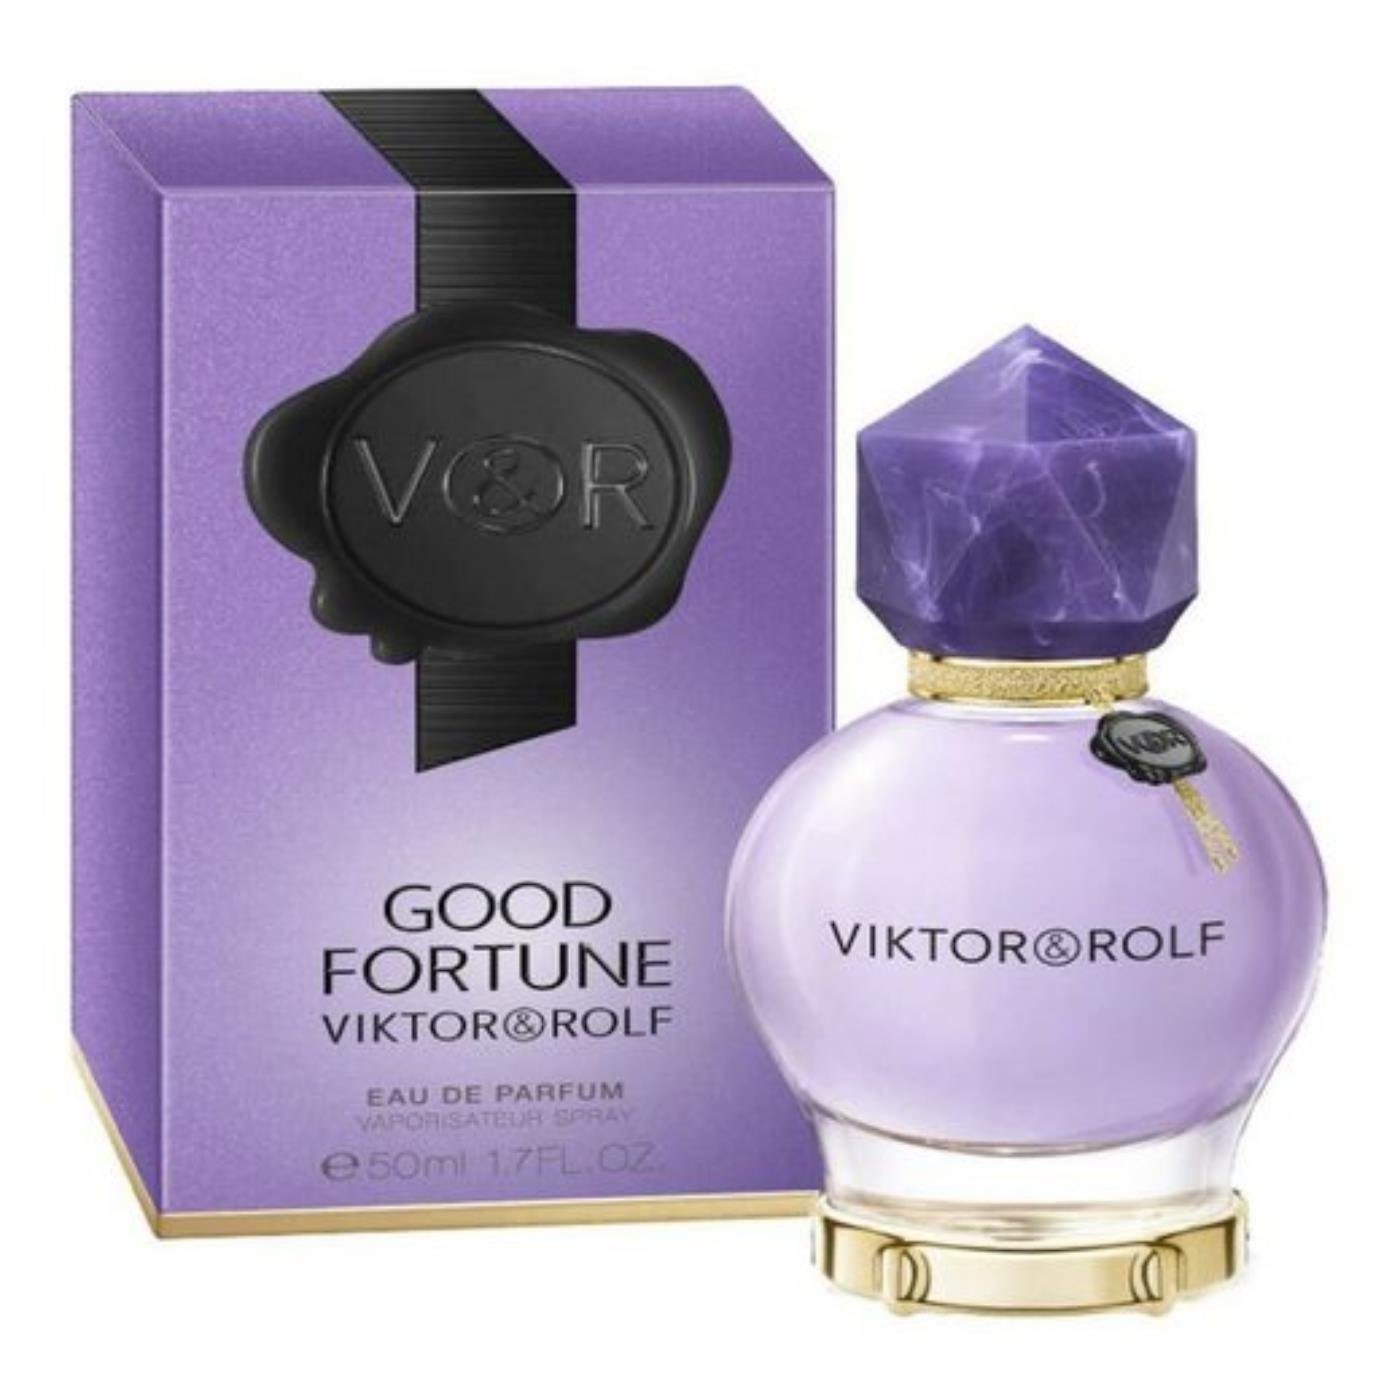 Viktor & Rolf Eau de Parfum Viktor & Rolf Good Fortune Eau de Parfum